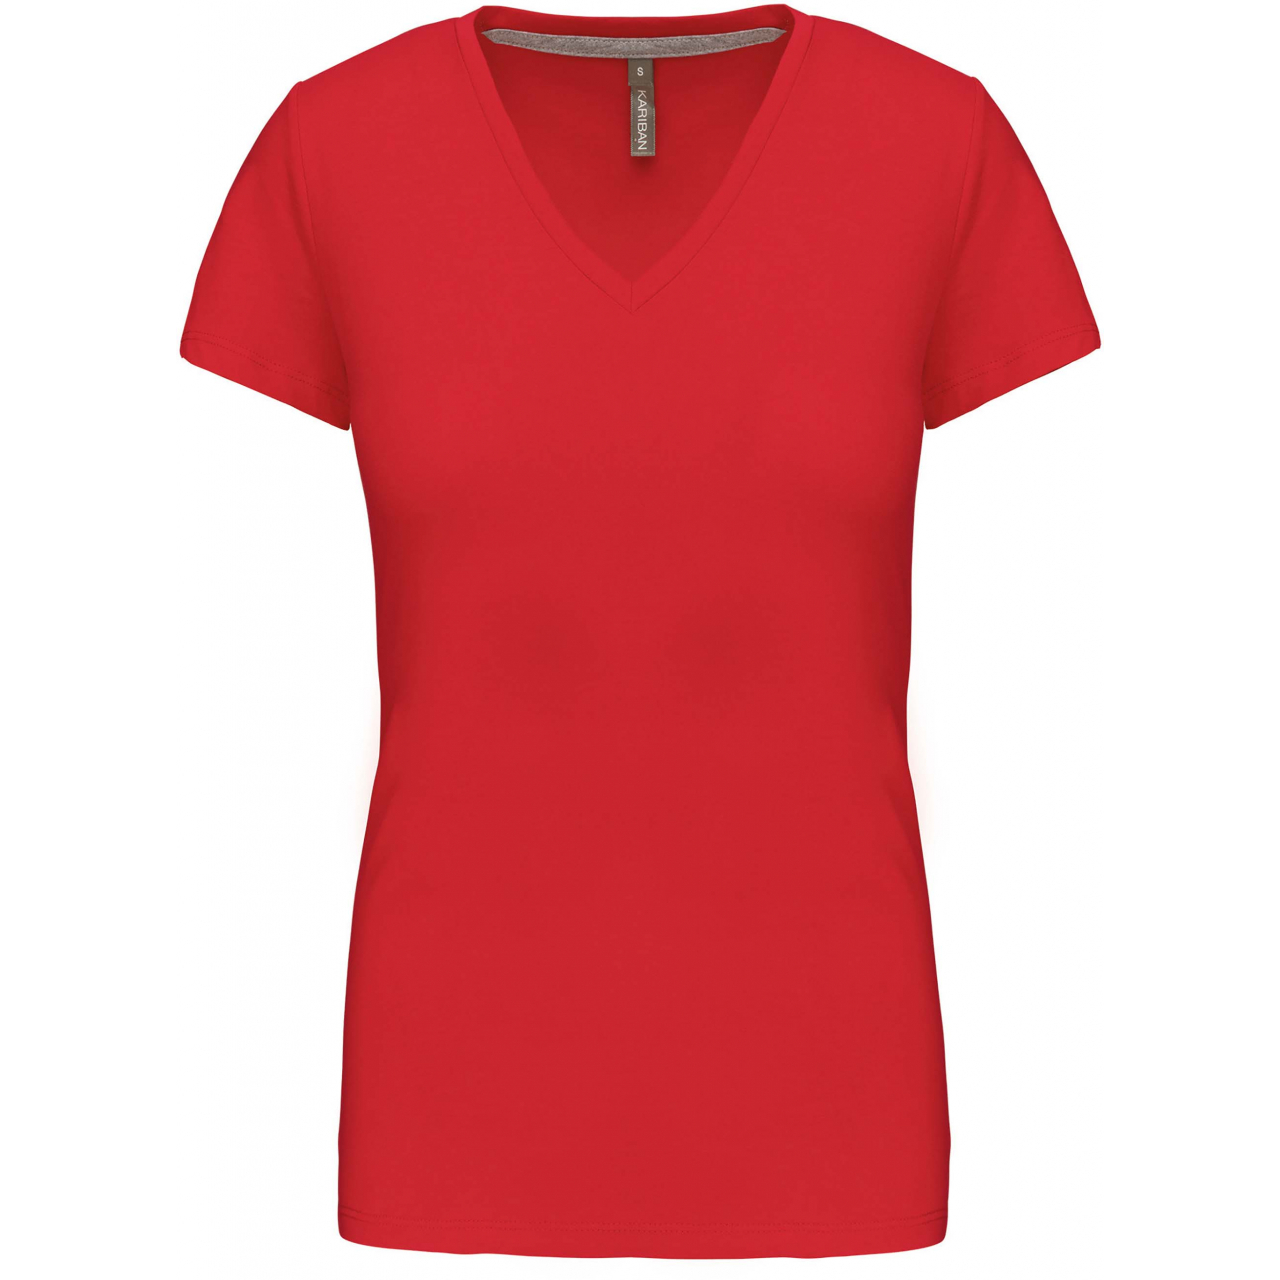 Dámské tričko Kariban V-neck s krátkým rukávem - červené, M